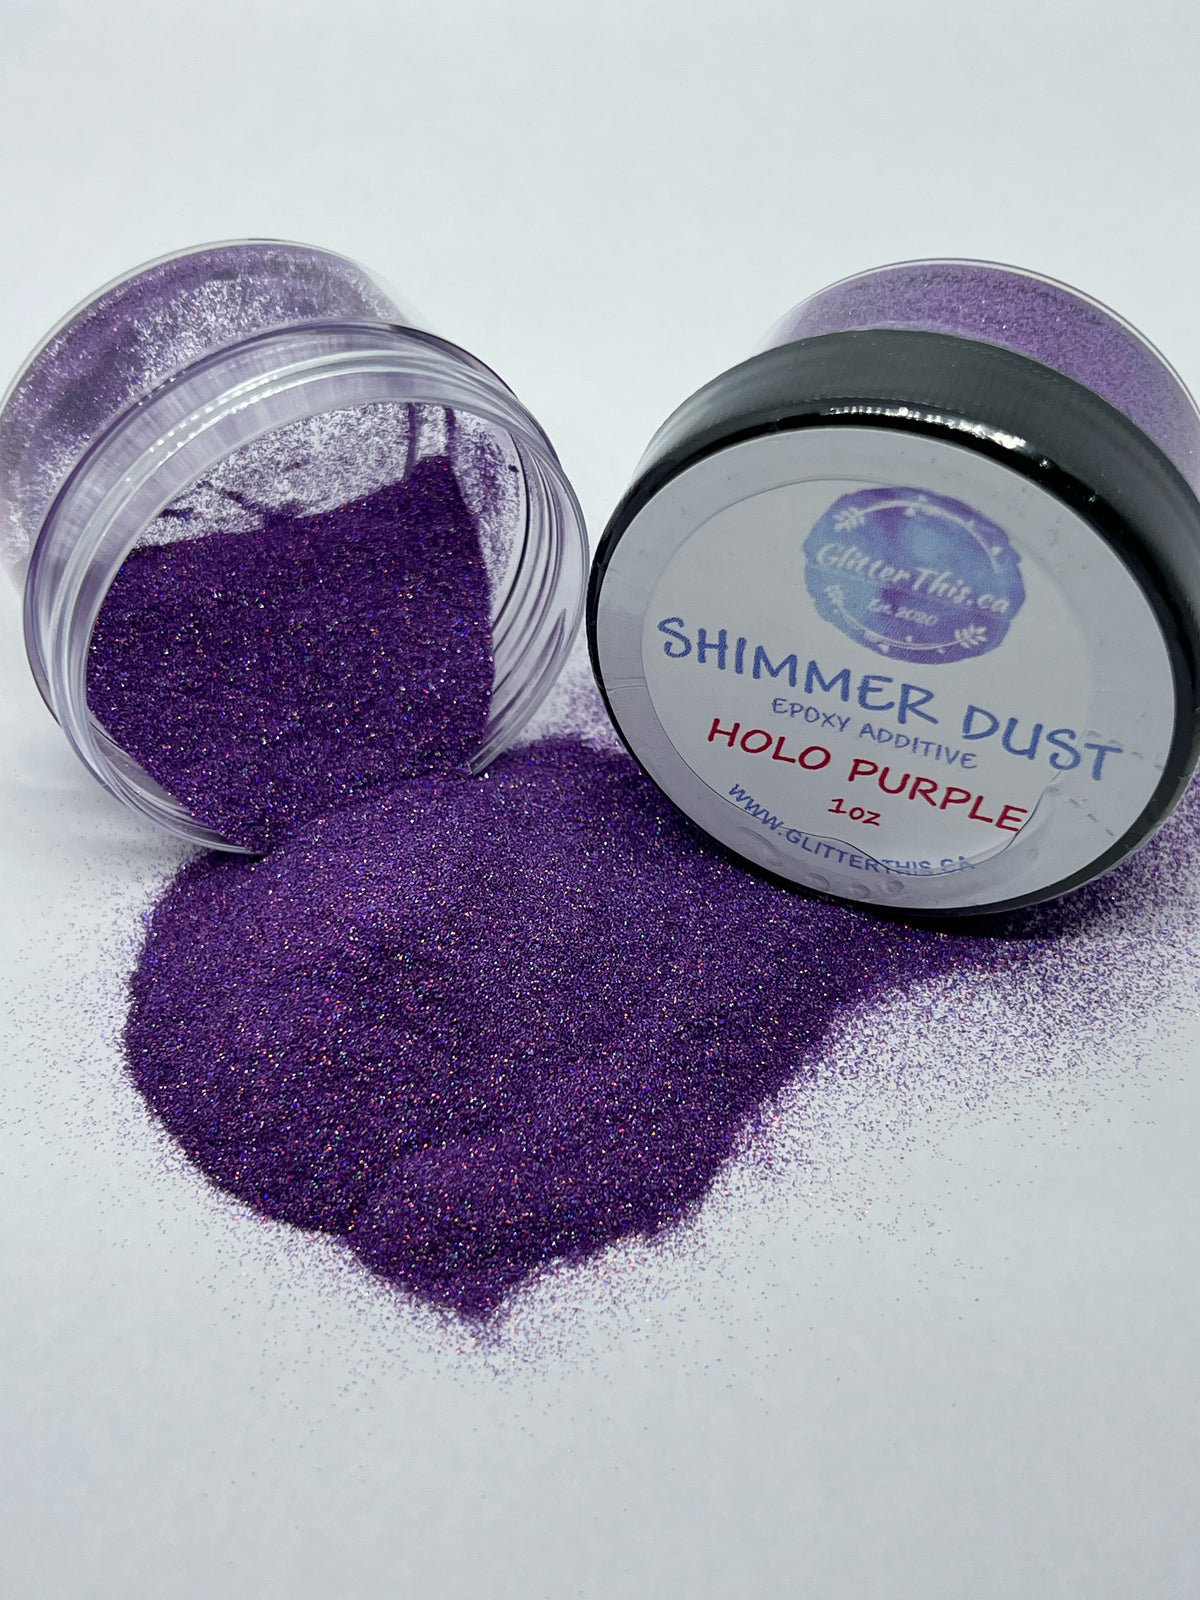 Shimmer Dust - Holo Purple